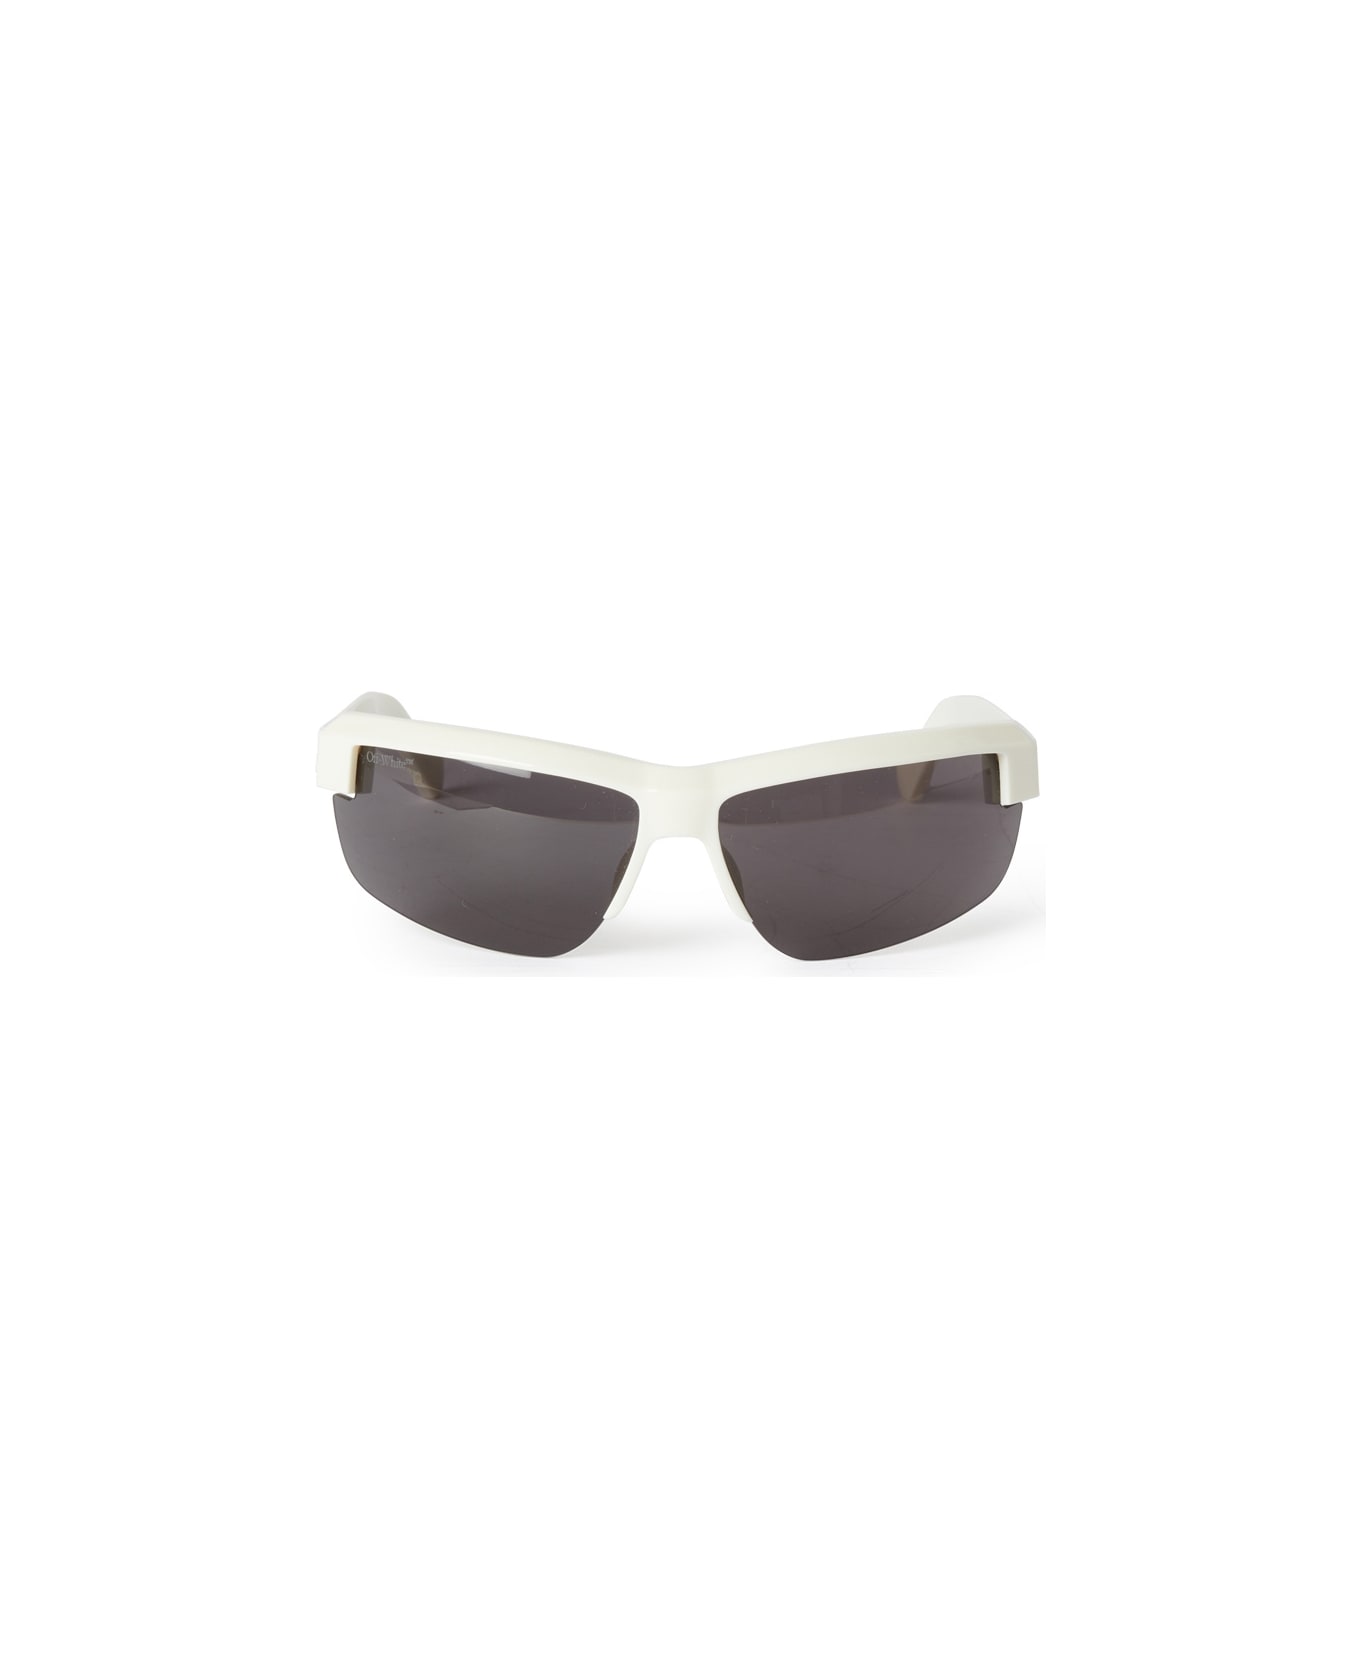 Off-White TOLEDO SUNGLASSES Sunglasses - White